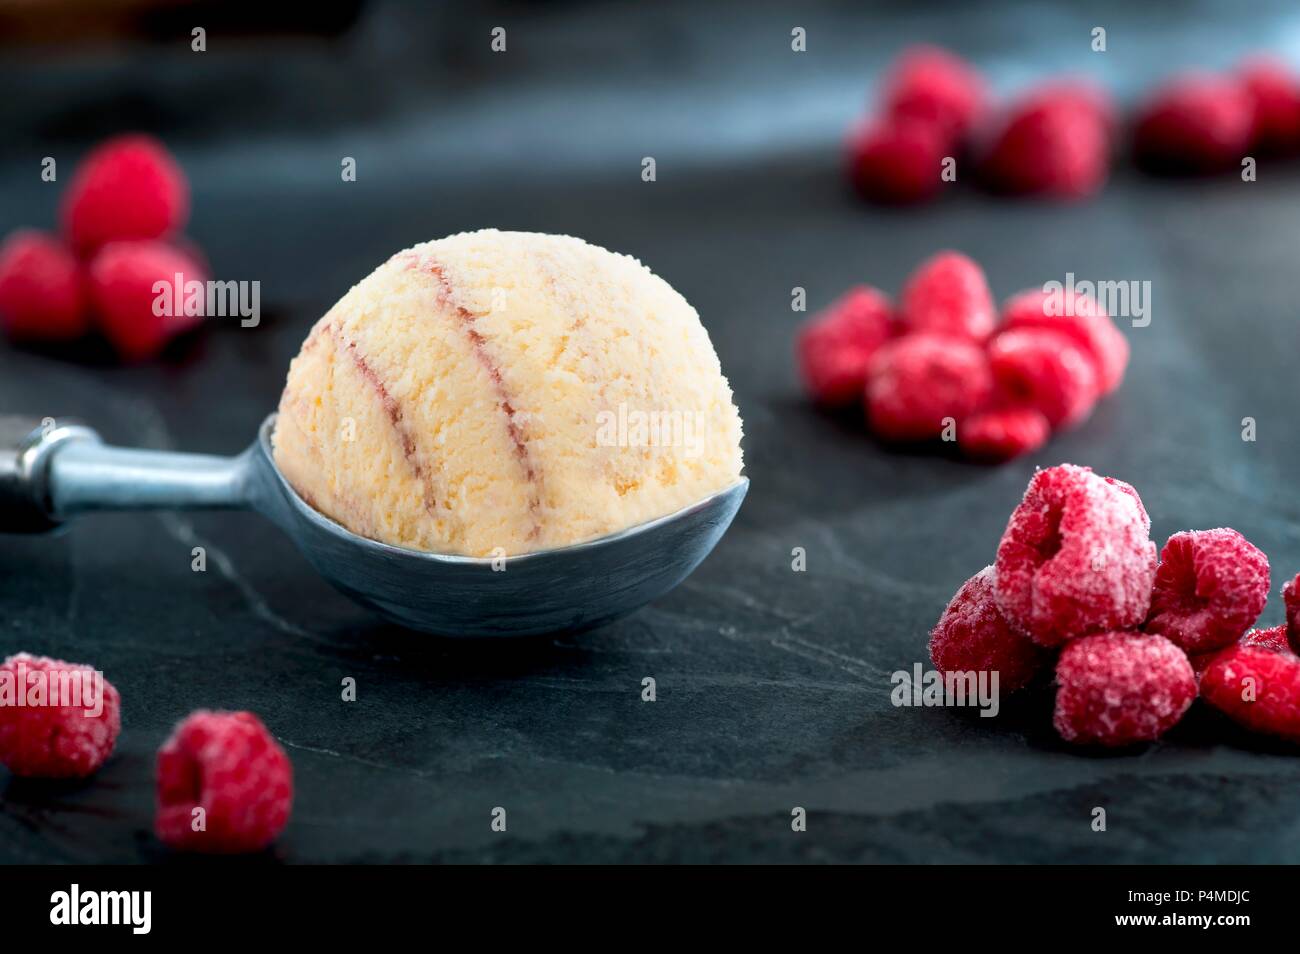 Raspberry ice cream and frozen raspberries Stock Photo